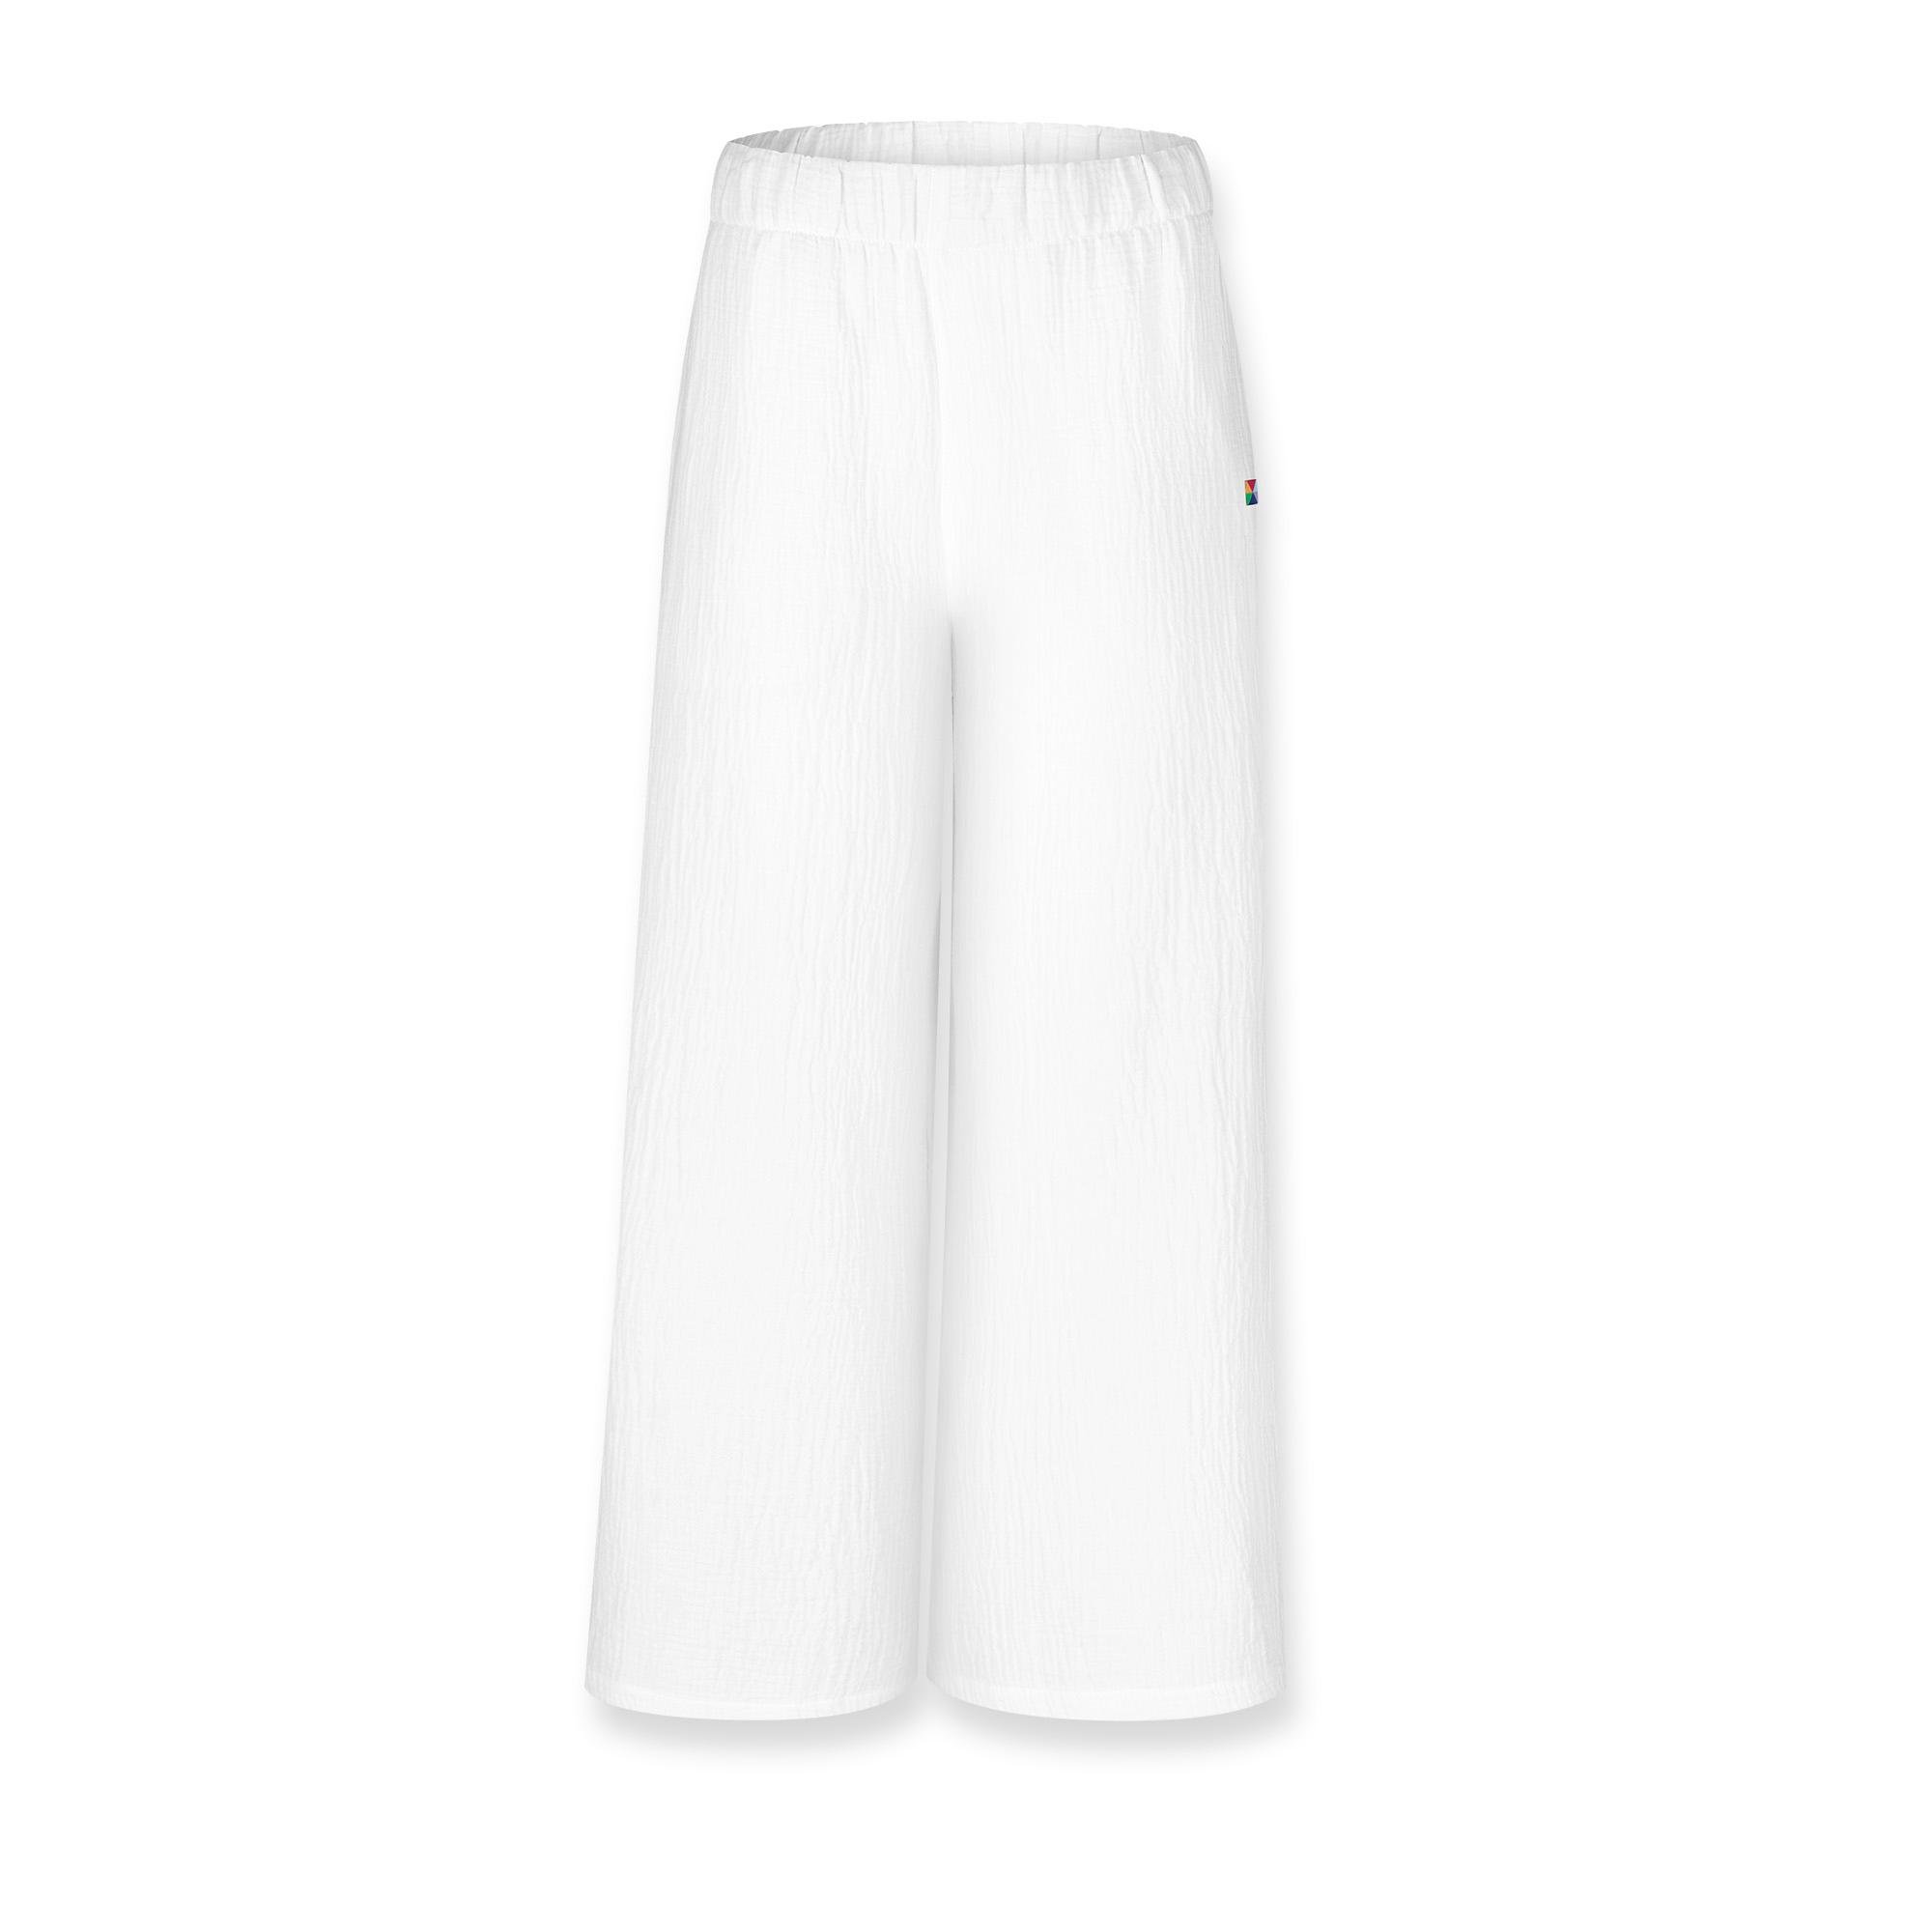 Białe spodnie muślinowe damskie